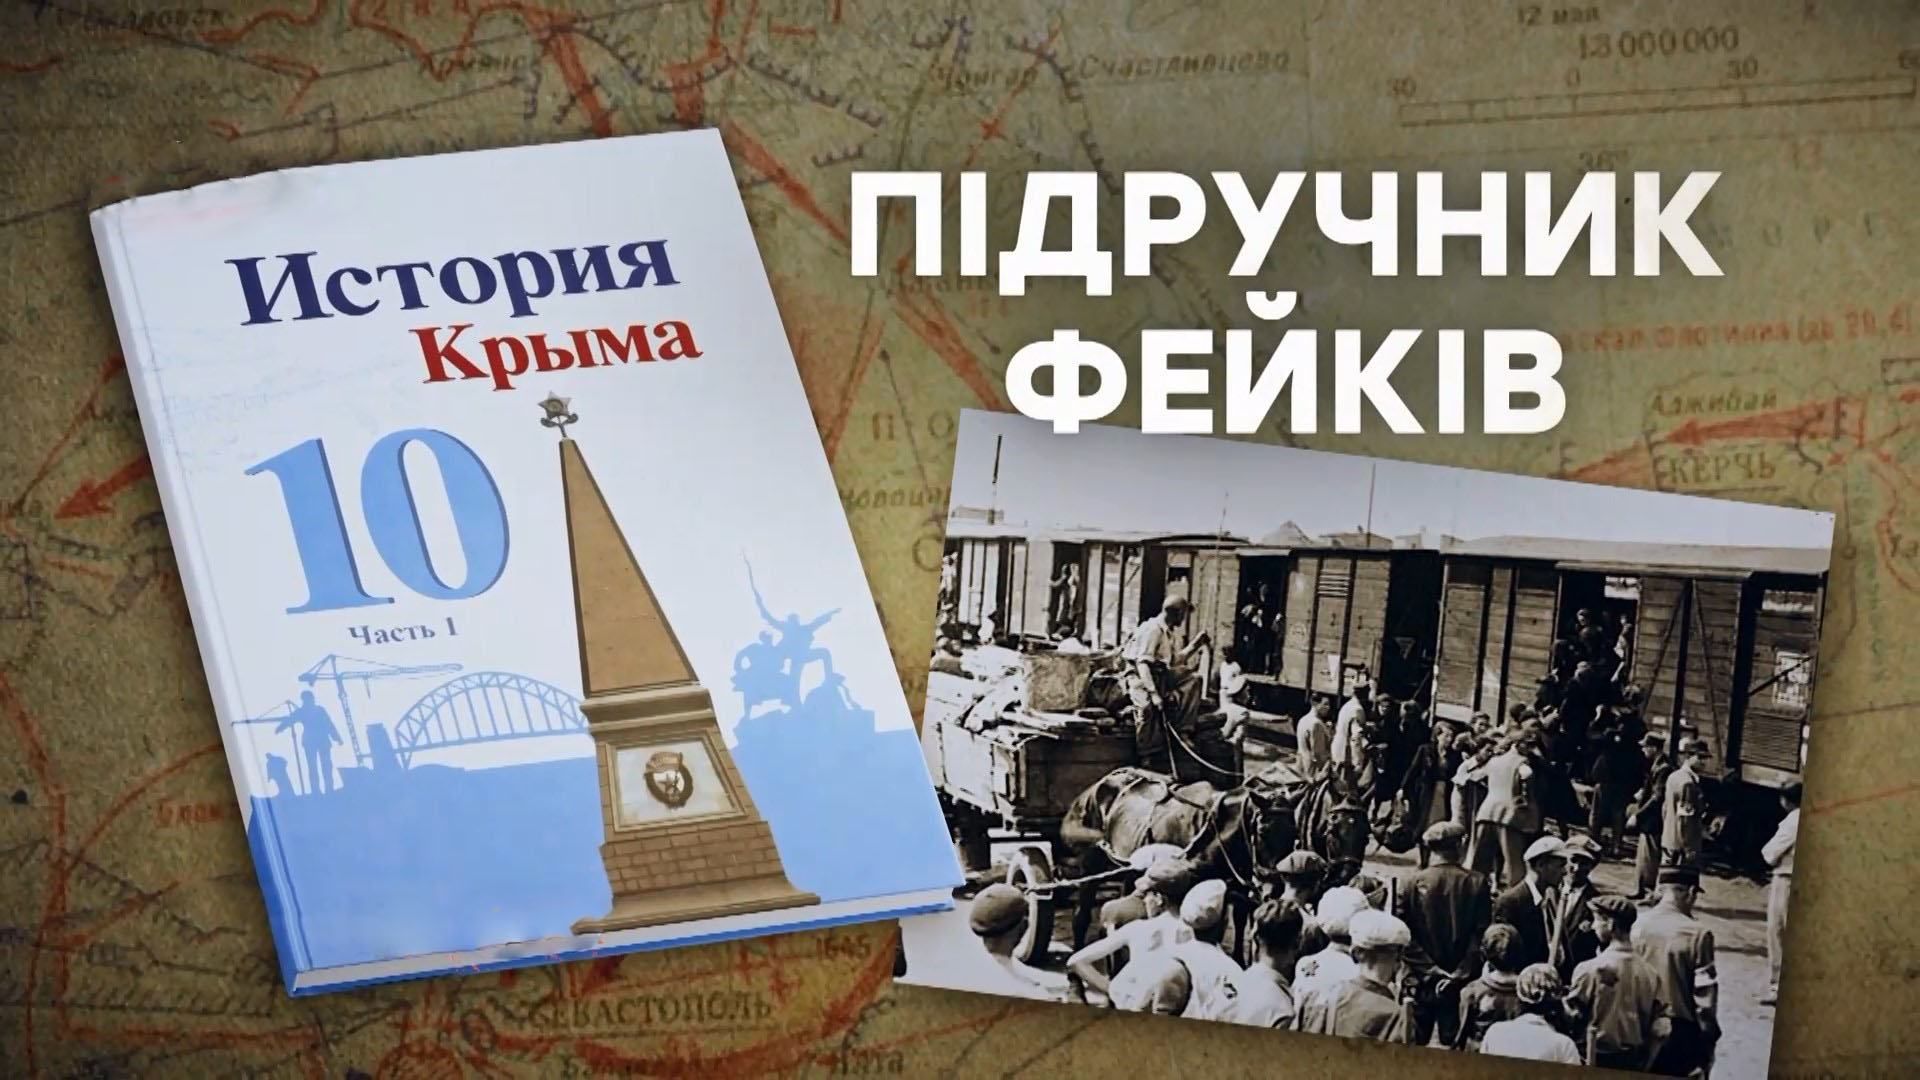 Новый учебник истории Крыма: российские историки сделали из крымских татар предателей